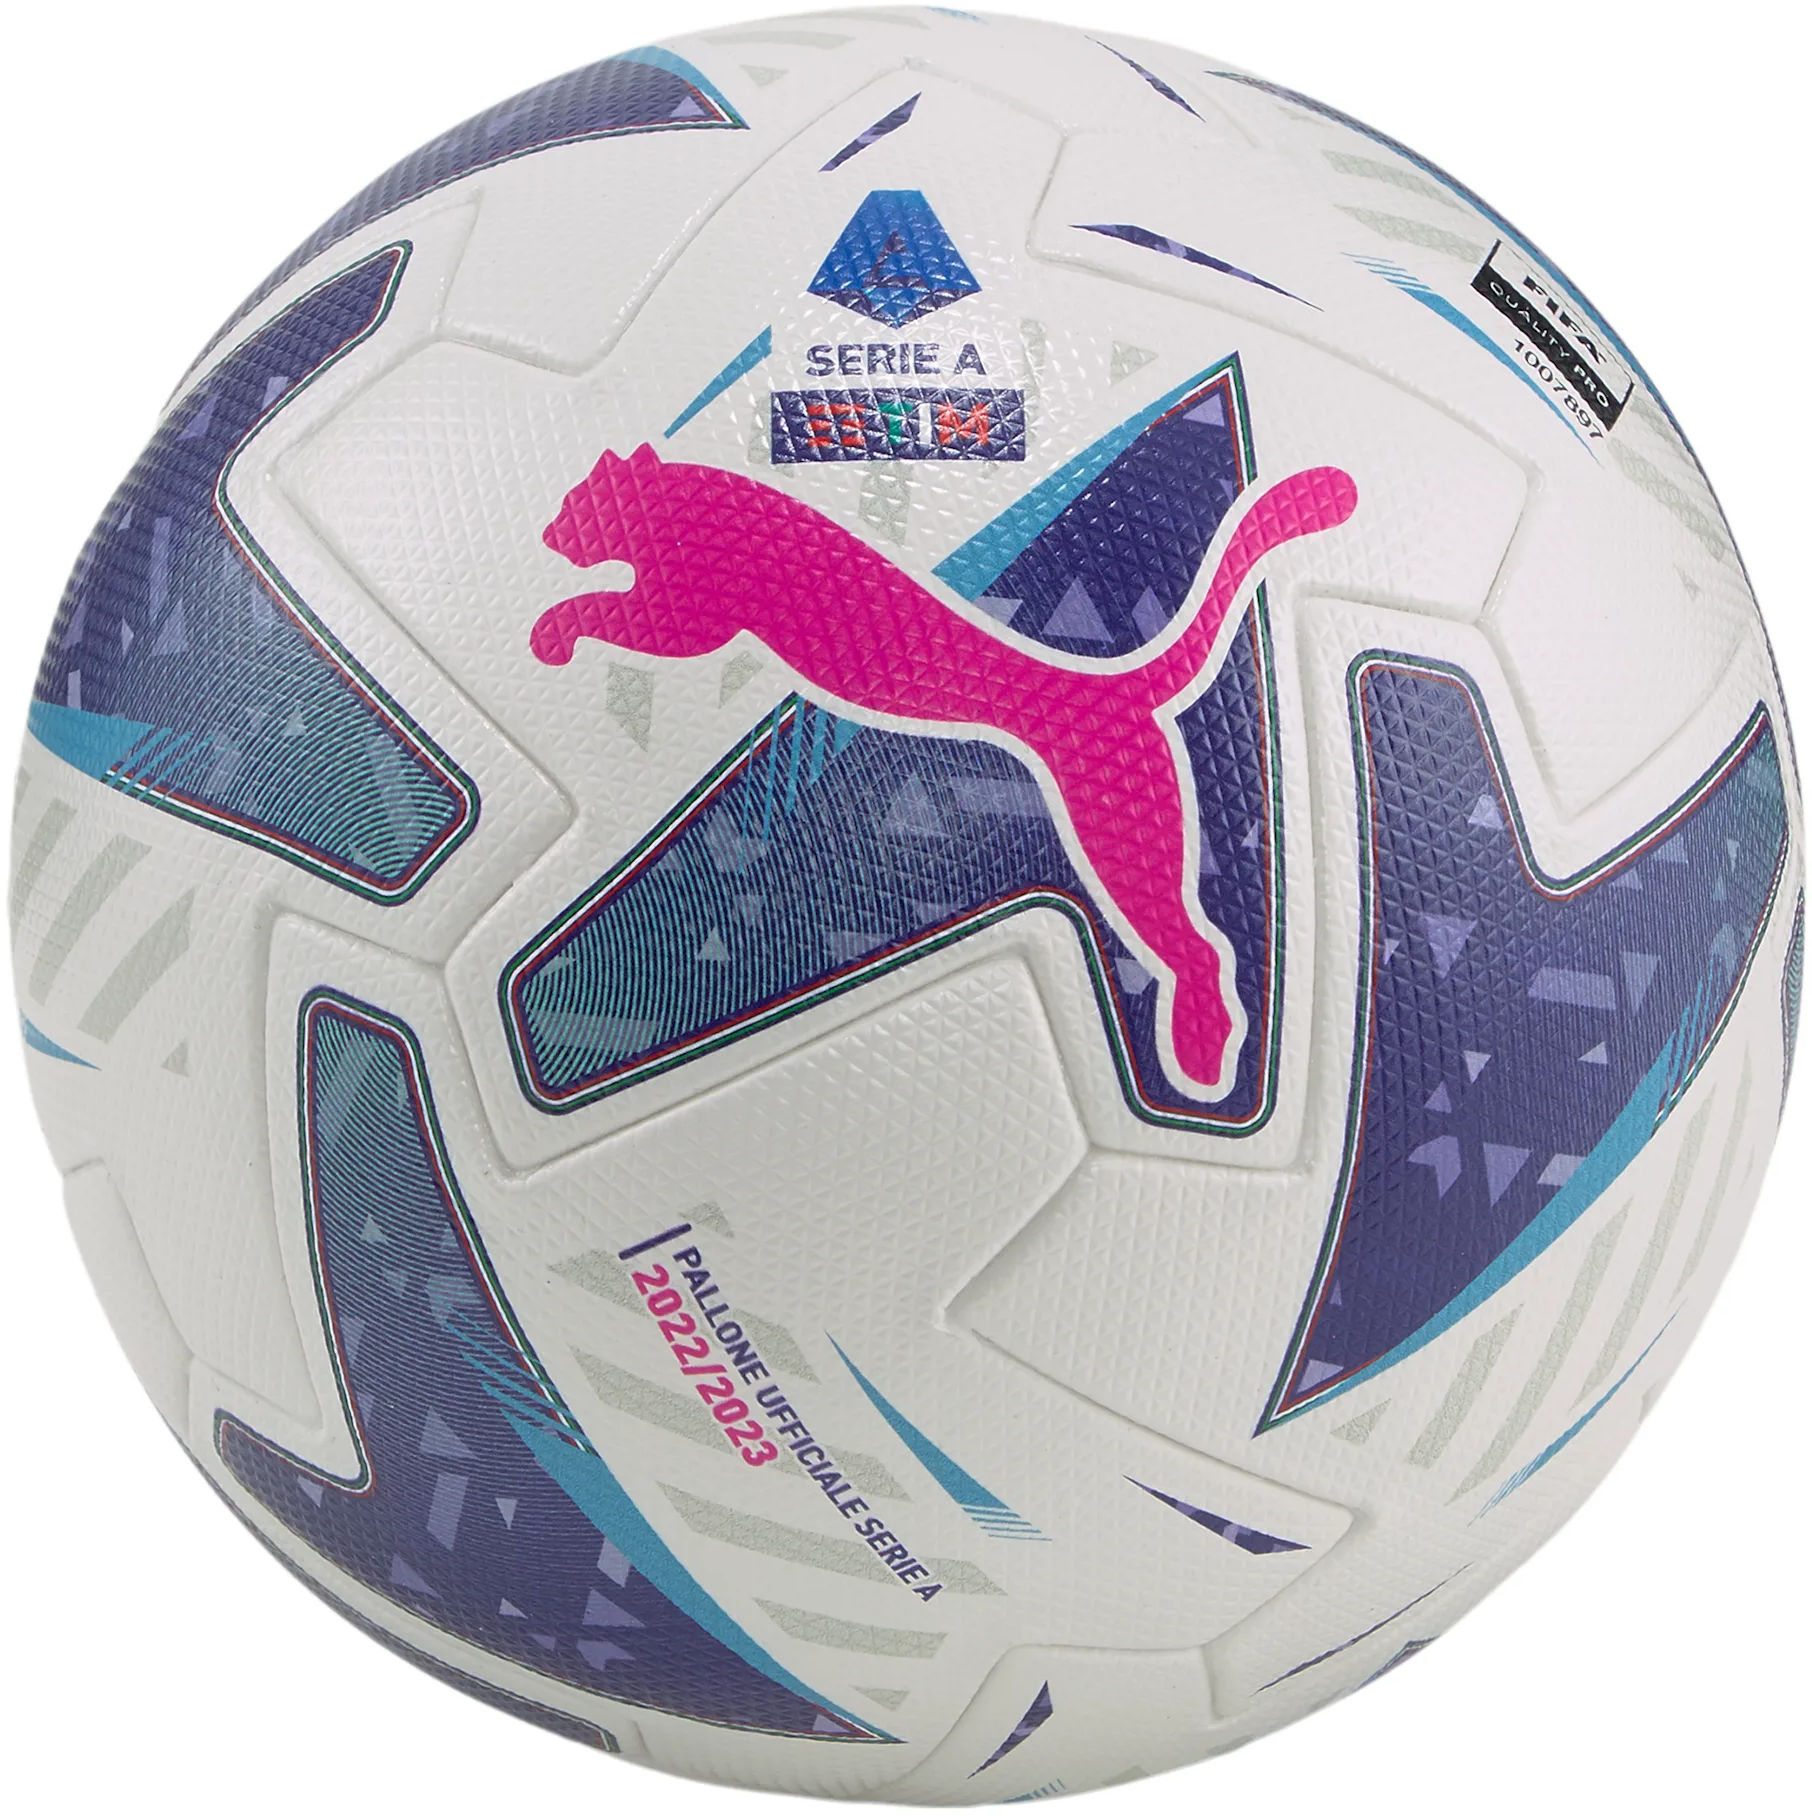 Μπάλα Puma Orbita Serie A (FIFA Quality Pro)